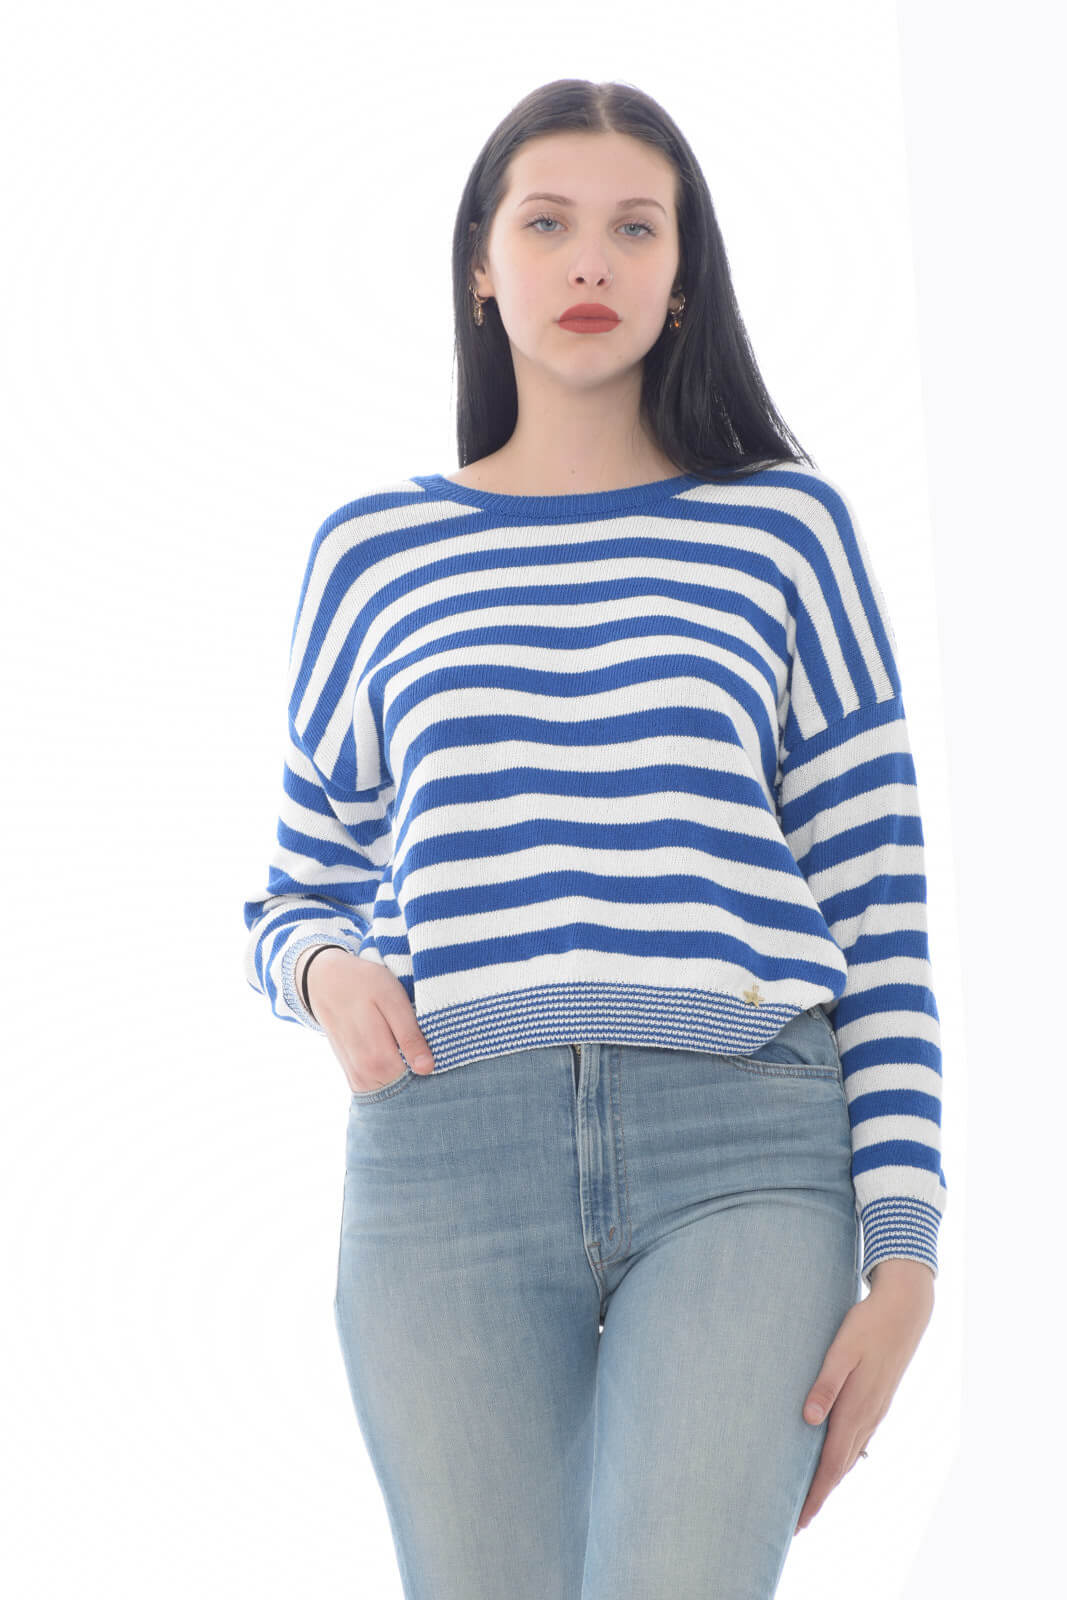 Souvenir Women's sweater in striped pattern